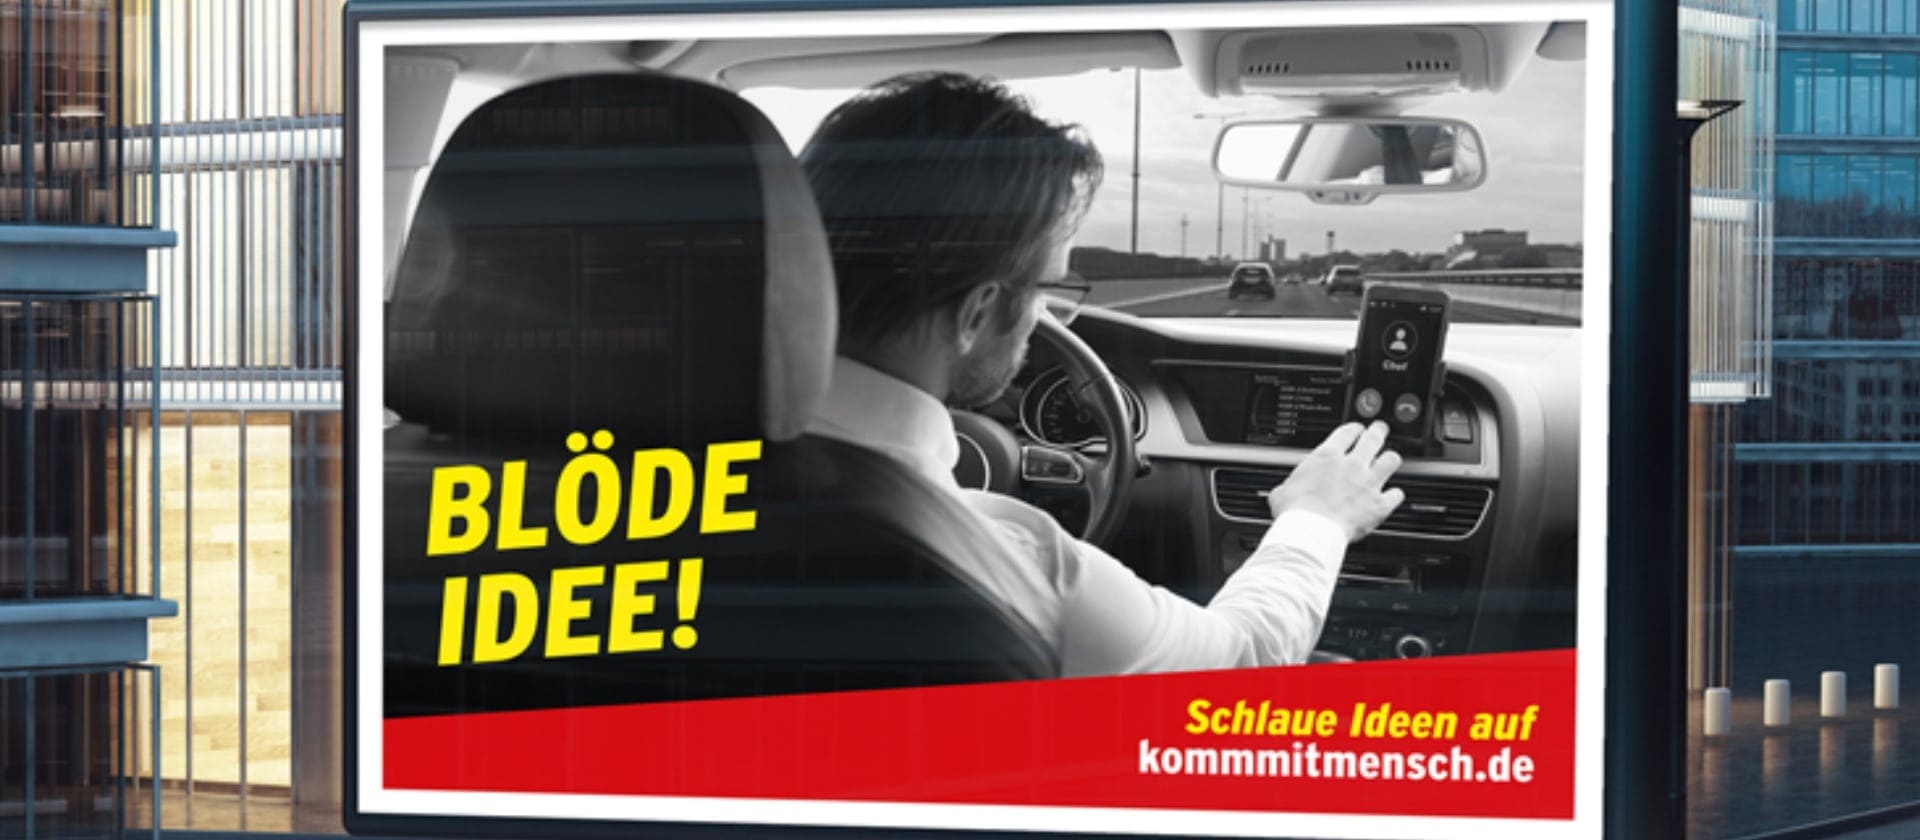 Zu sehen ist ein Werbeplakat, dass Verkehrsunfälle wegen Unaufmerksamkeit am Steuer verhindern soll. Es zeigt einen Mann, der am Steuer auf sein Handy tippt.